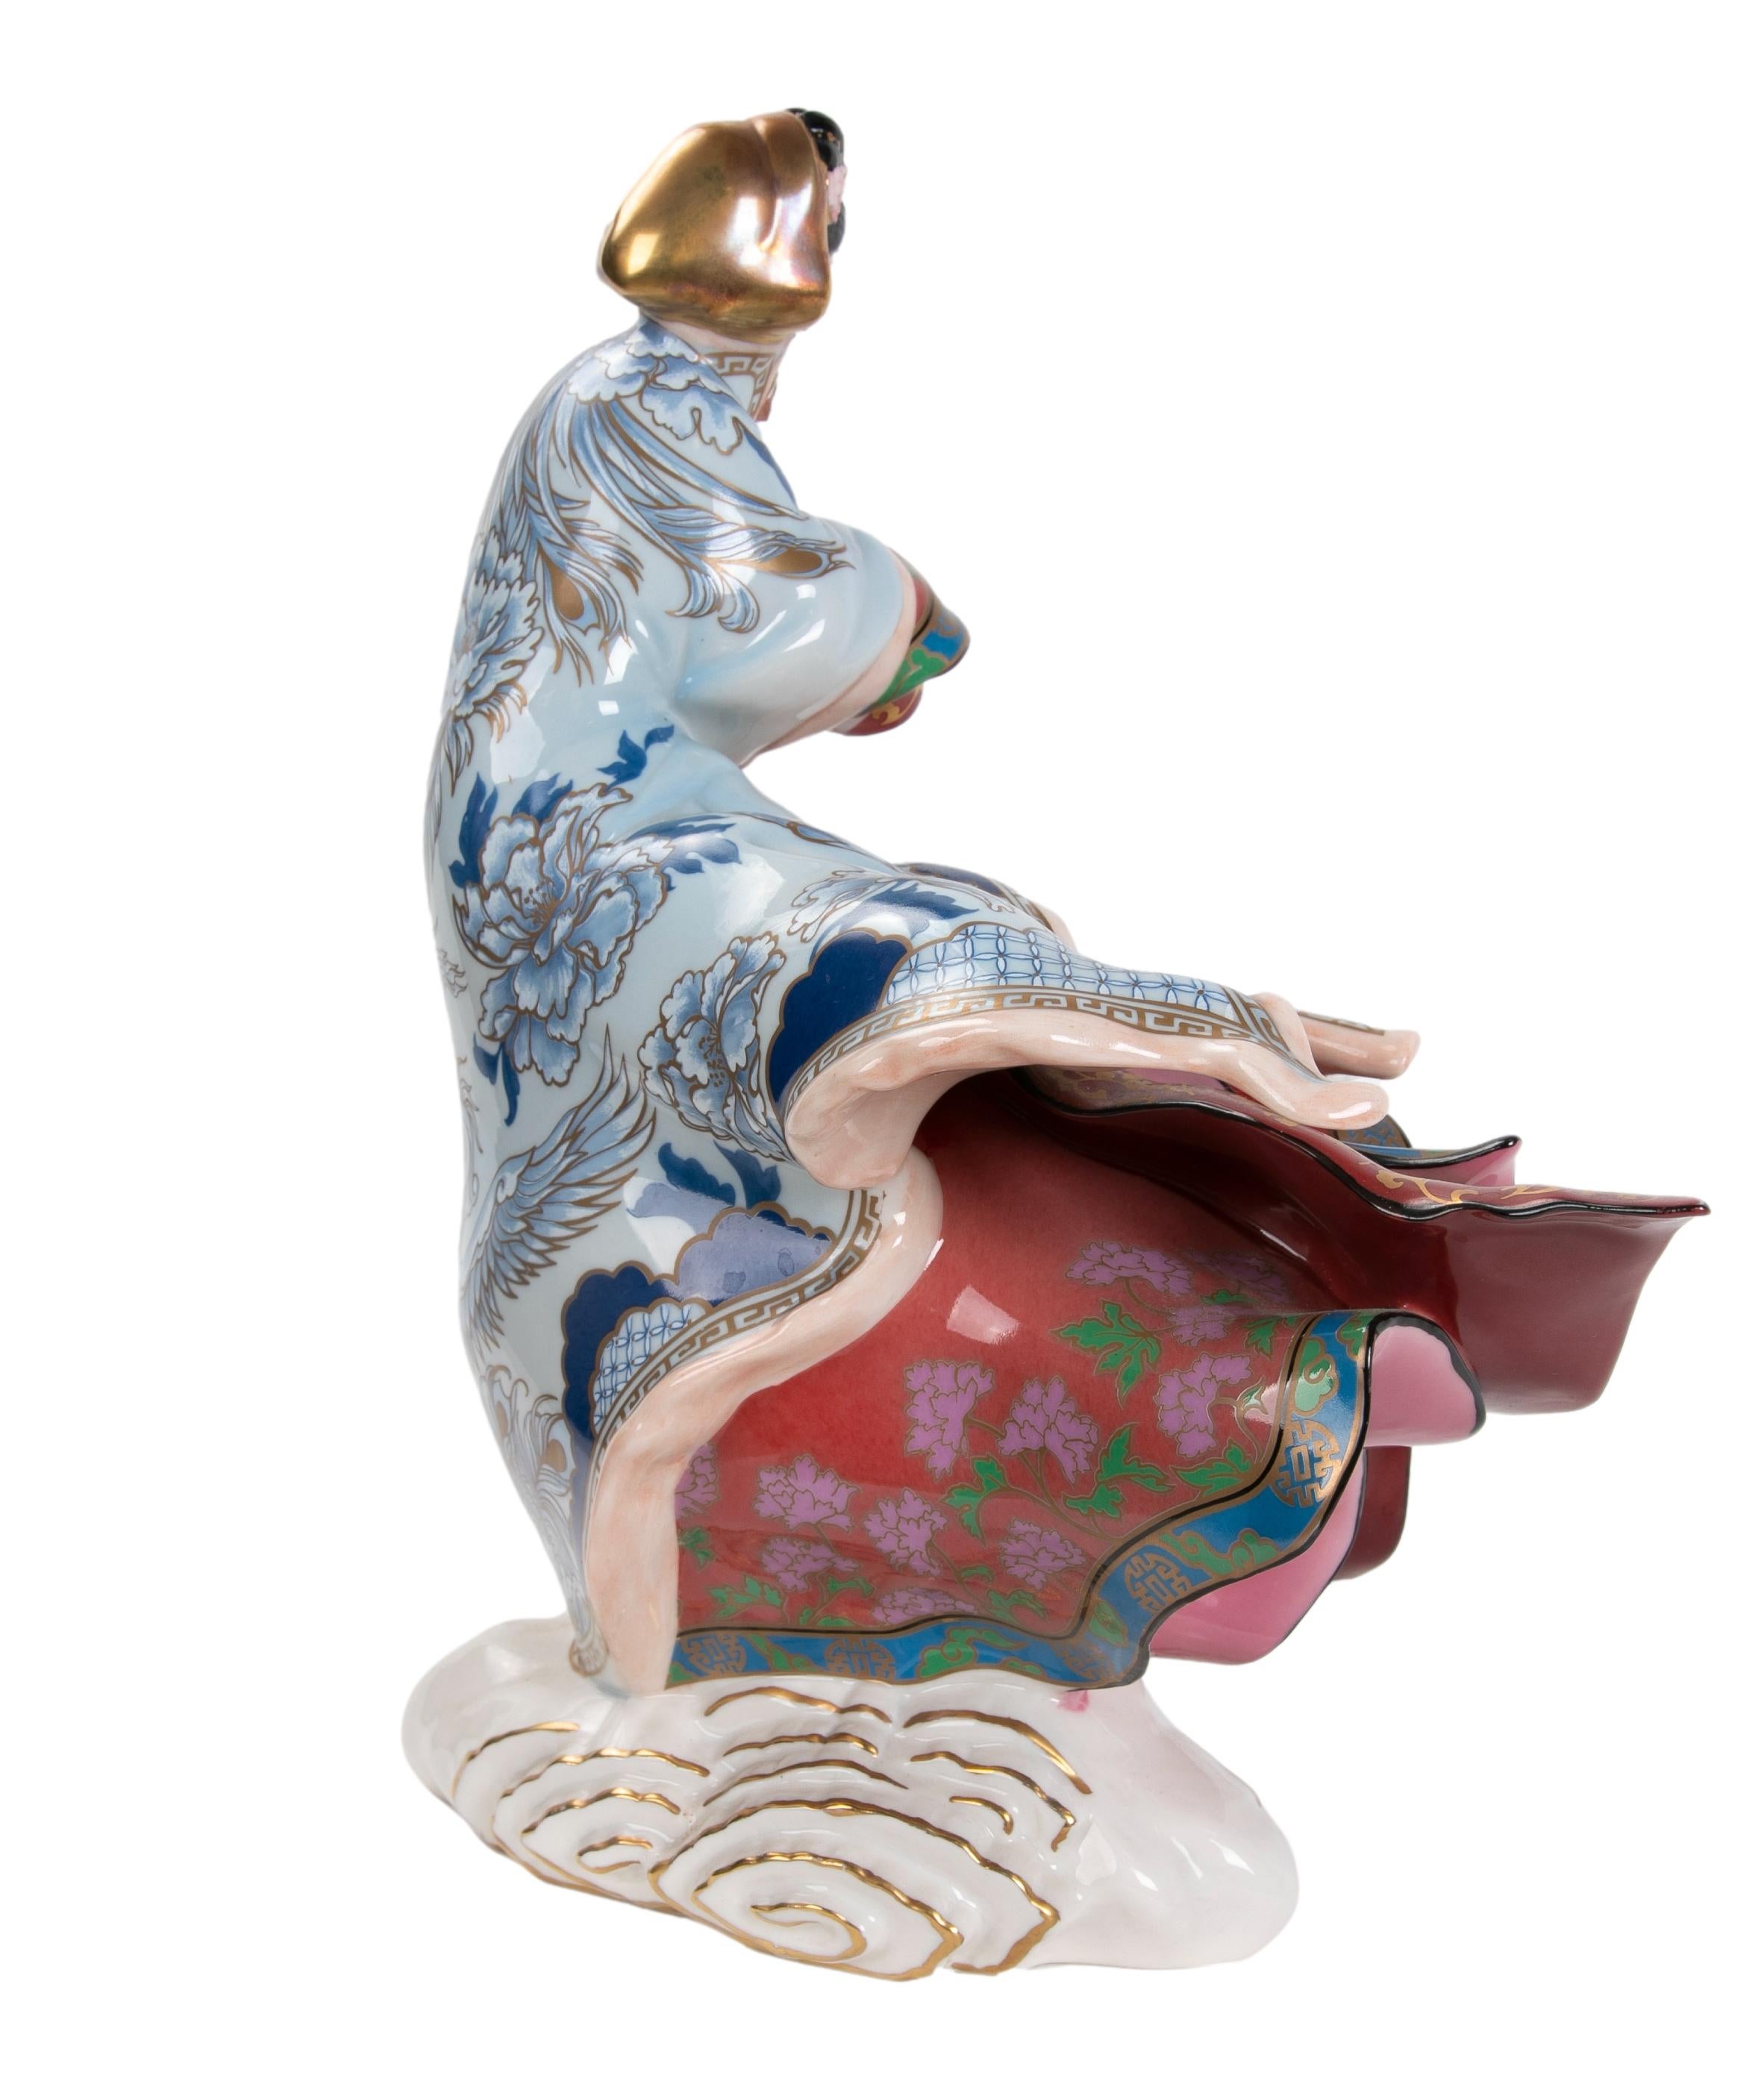 1980er Jahre Porzellanskulptur einer japanischen Frau, hergestellt von The Franklin Mint
Limitierte und nummerierte Auflage Nr. M 7256, als Titel Empress of The Snow.